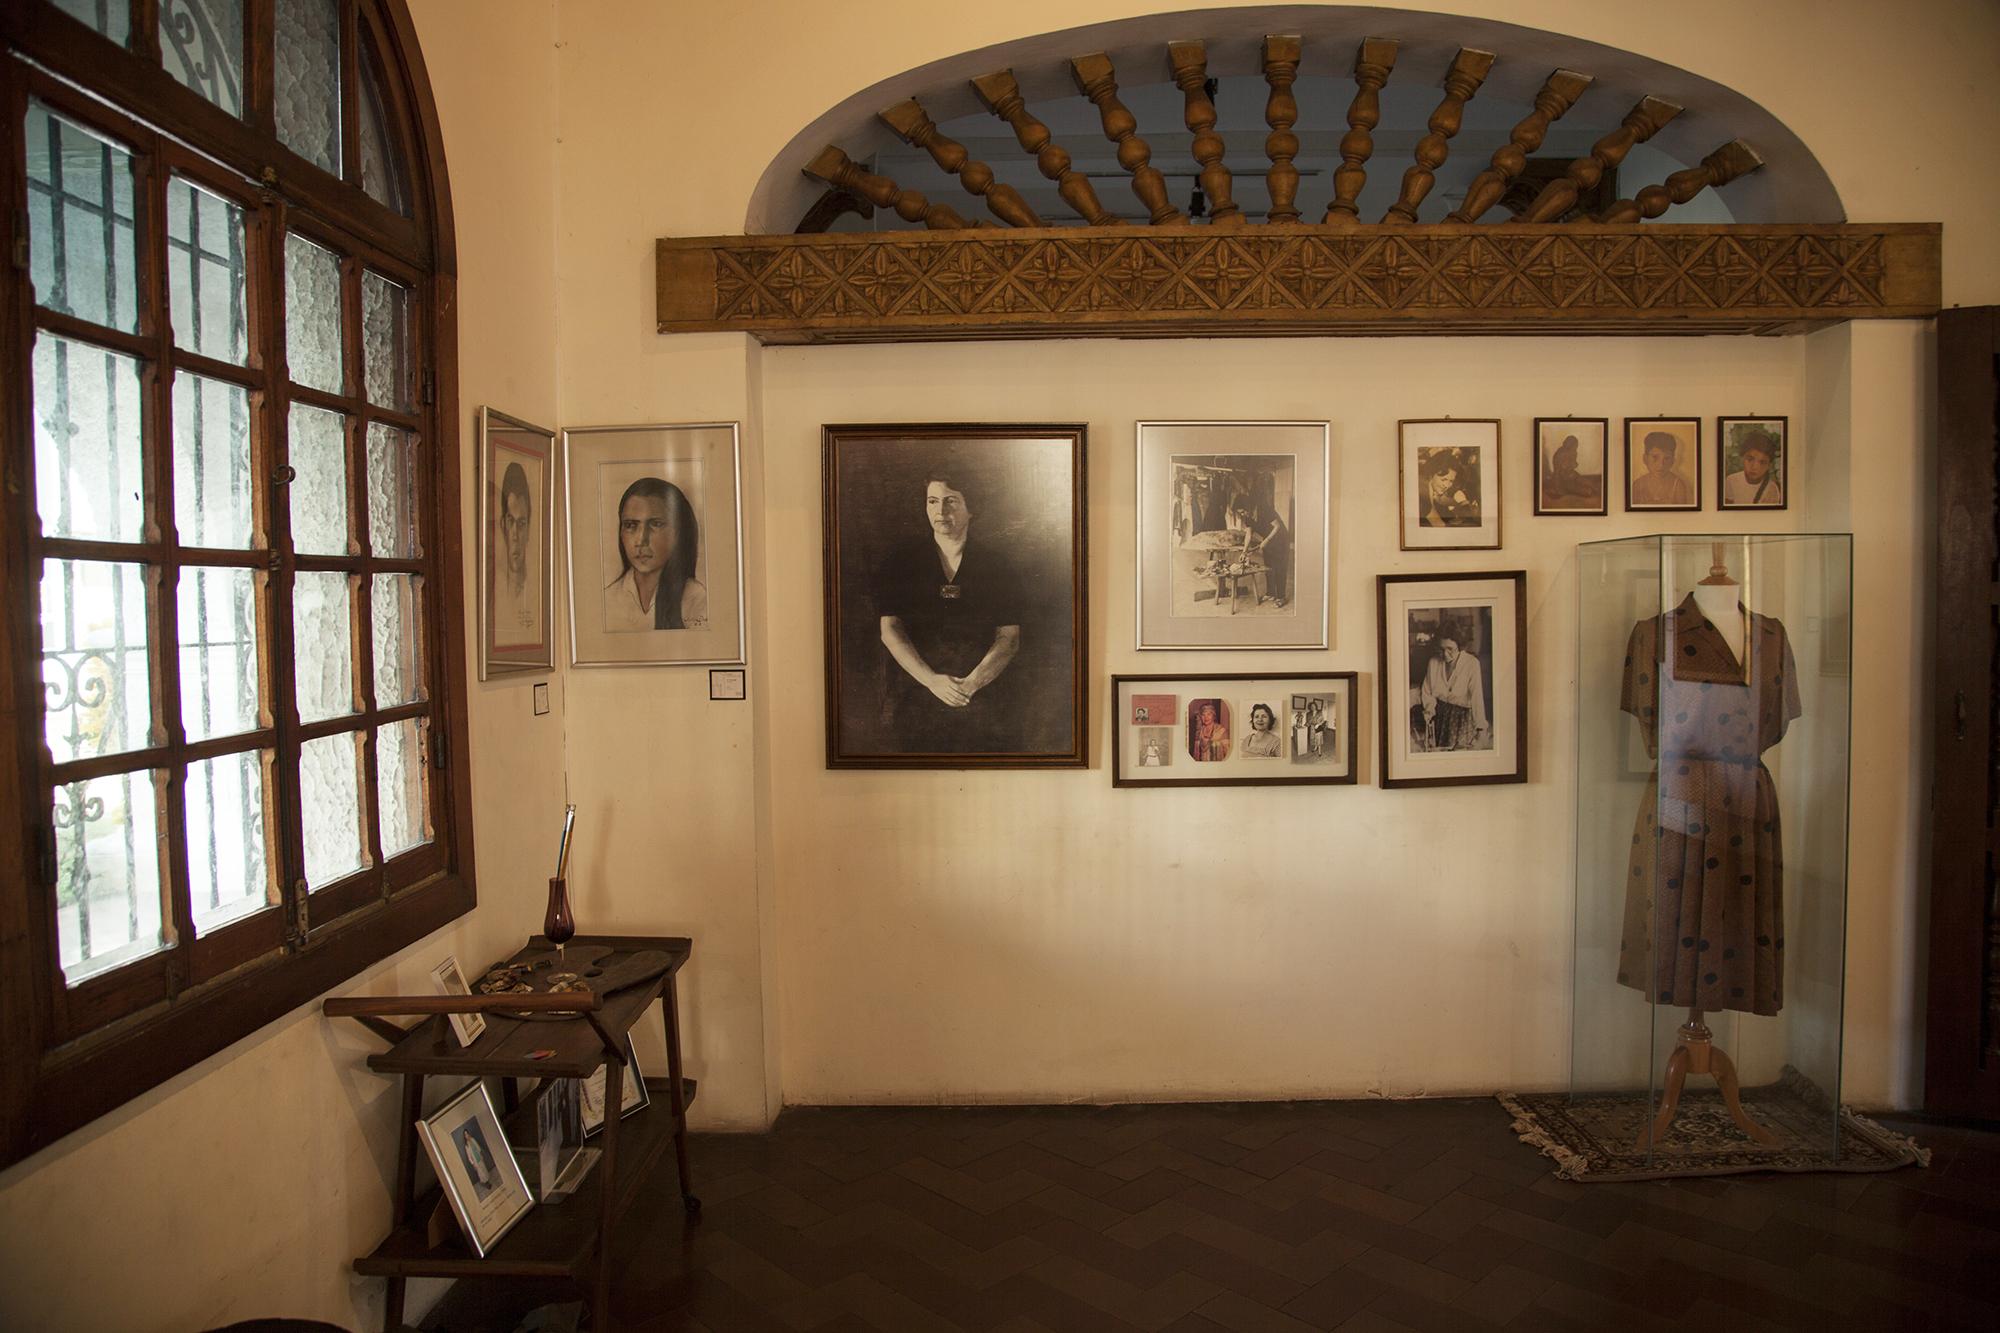 La sala Julia Díaz alberga piezas de su autoría, además de retratos fotográficos y algunas de sus herramientas de trabajo. Foto: Víctor Peña